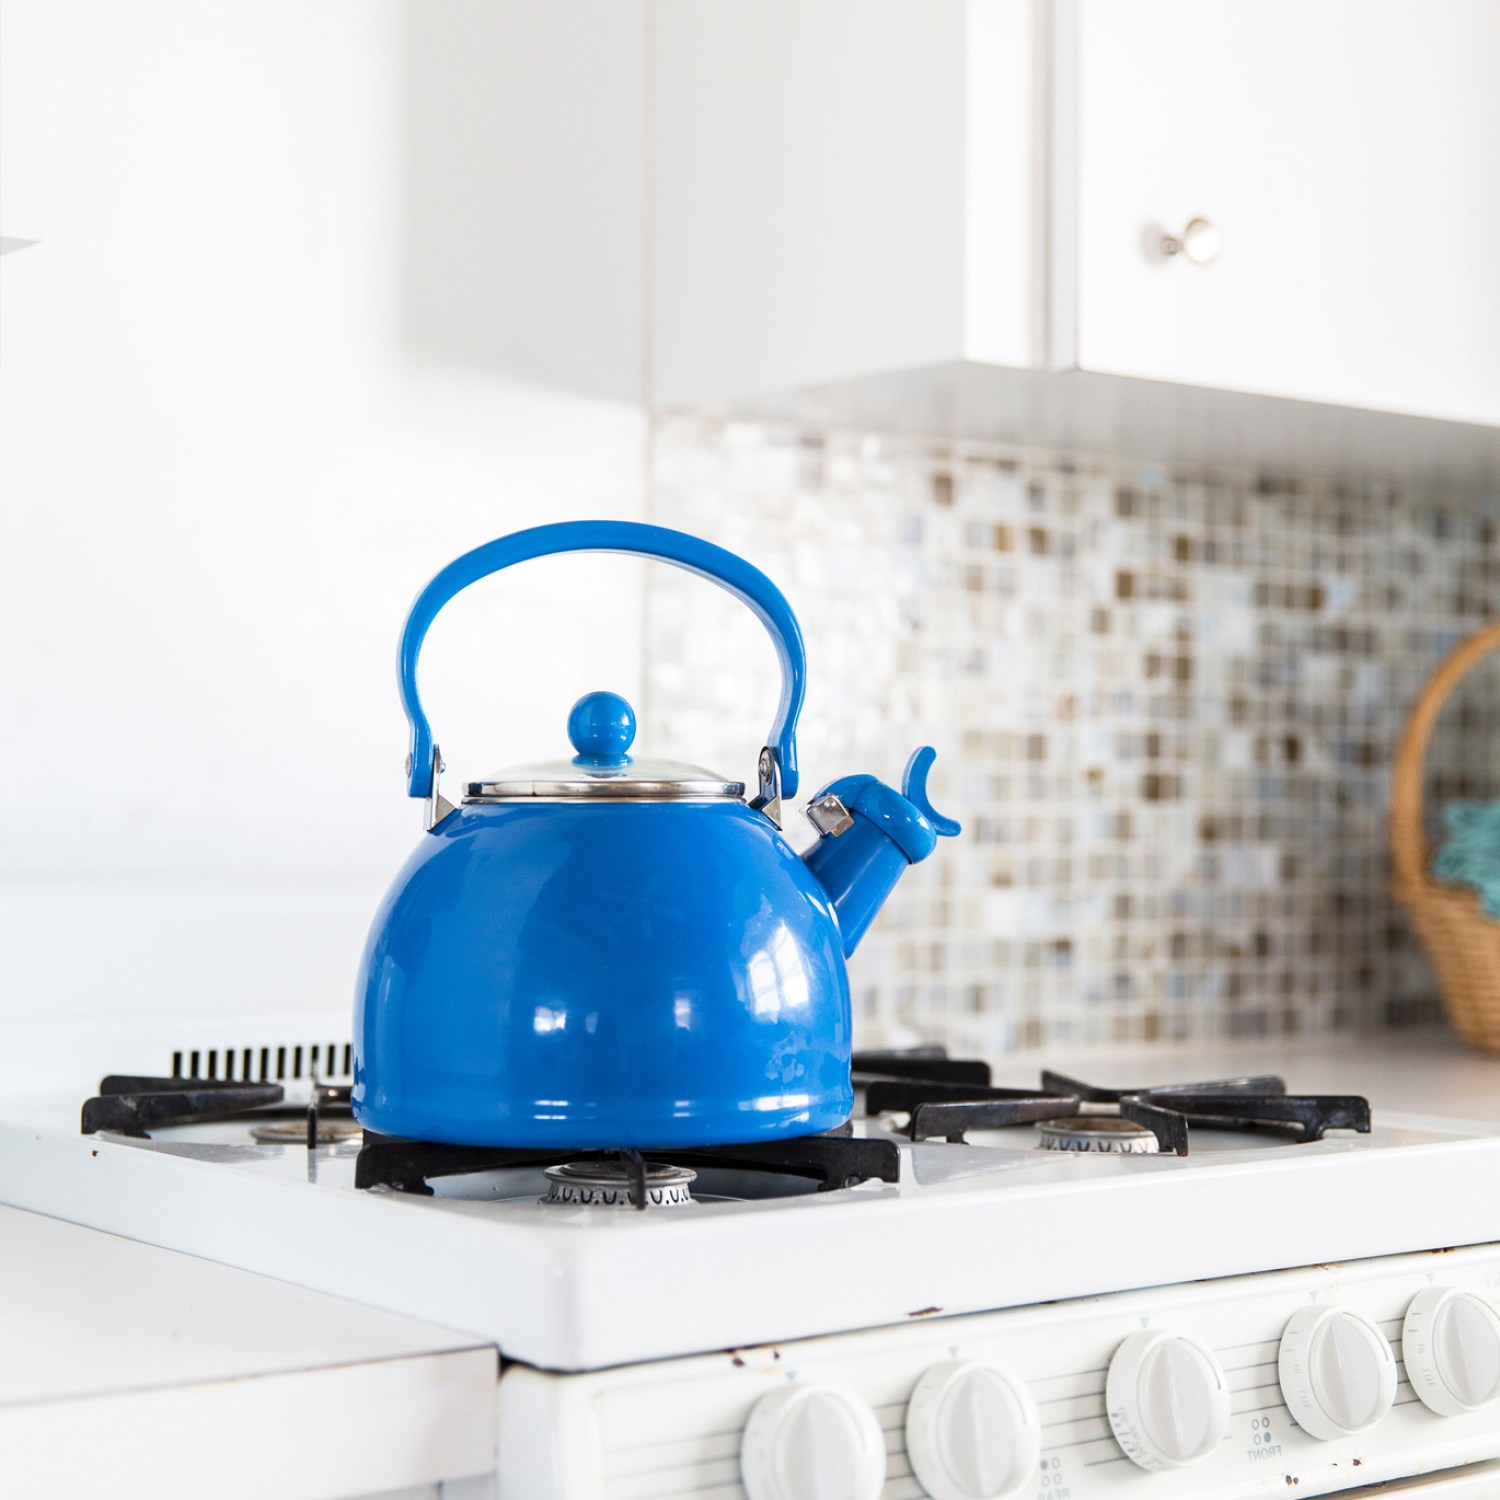 Blue tea kettle in a kitchen